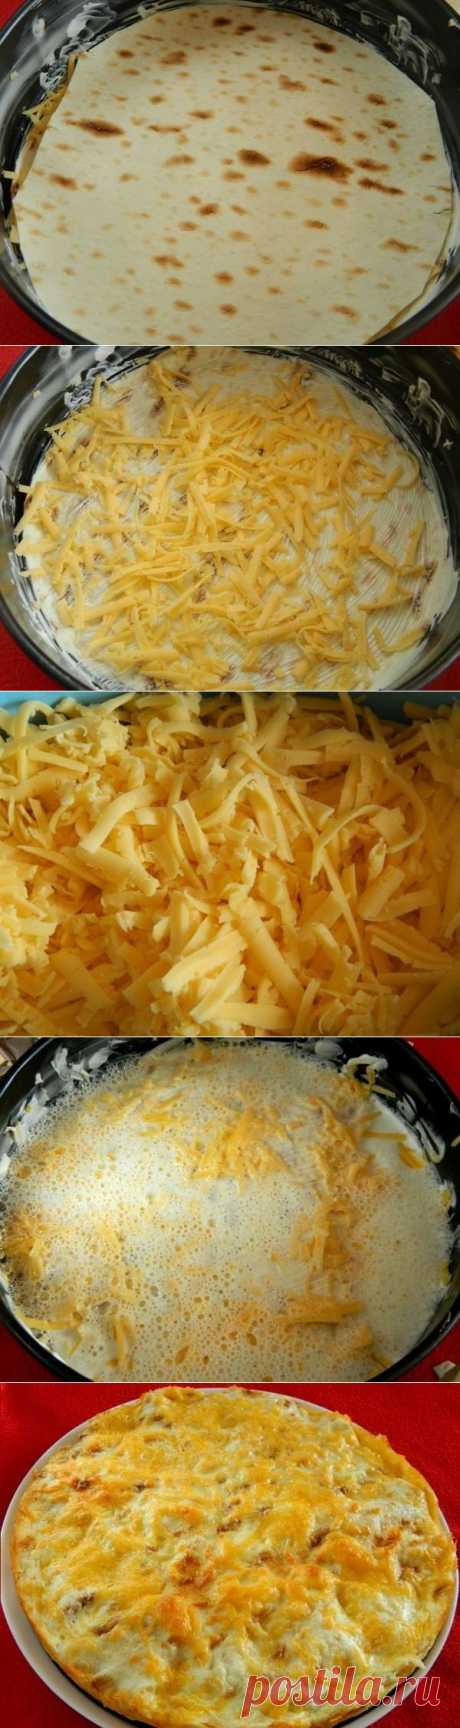 Как приготовить пирог из лаваша с сыром - рецепт, ингридиенты и фотографии